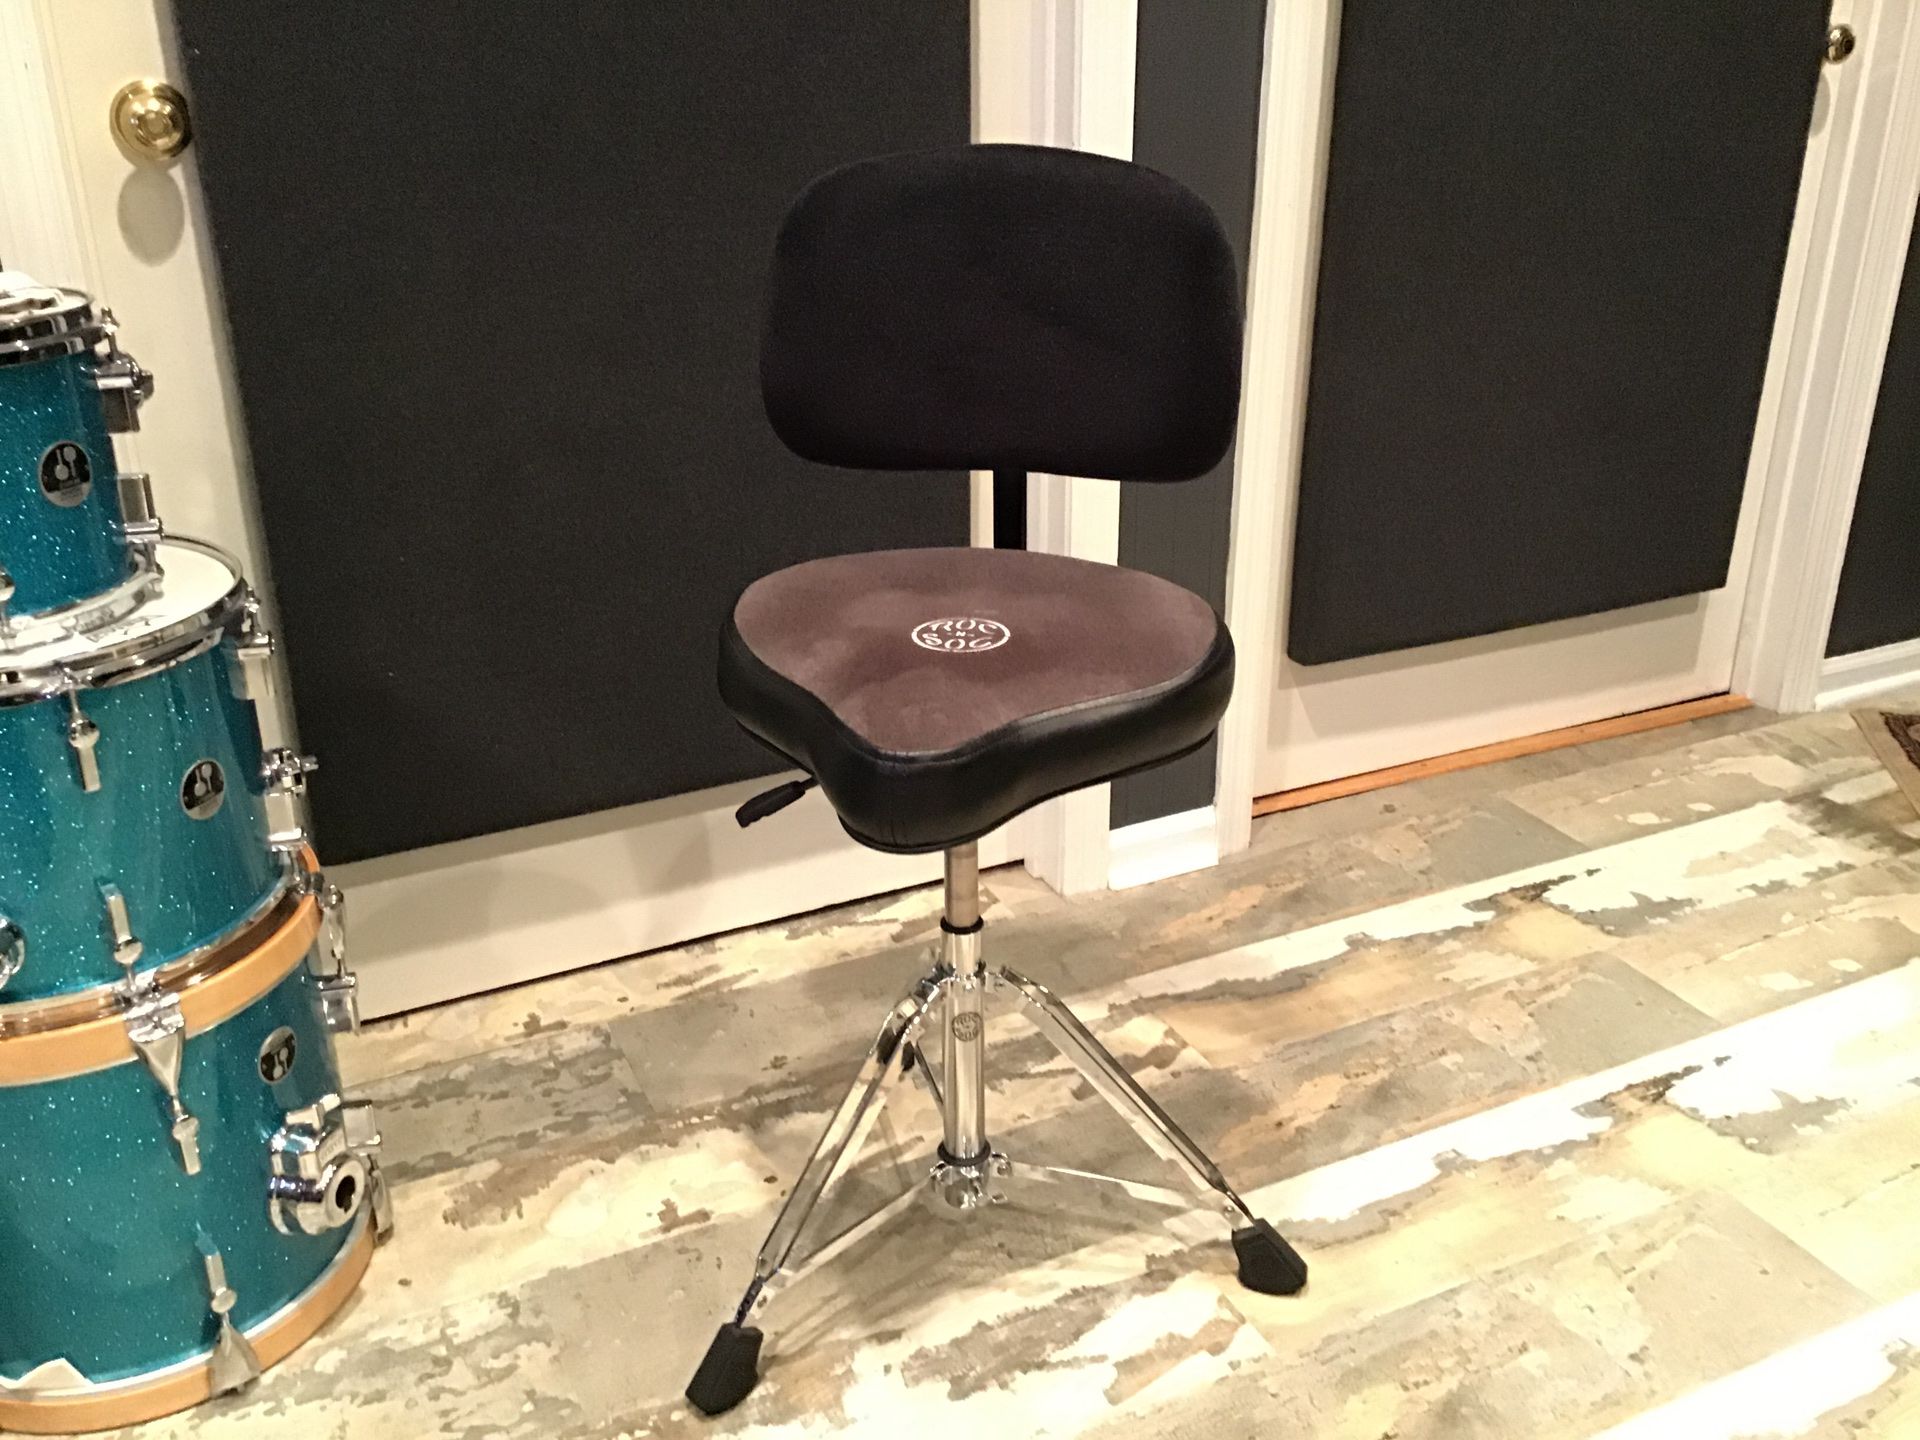 Roc N Soc nitro drum throne with backrest grey/black